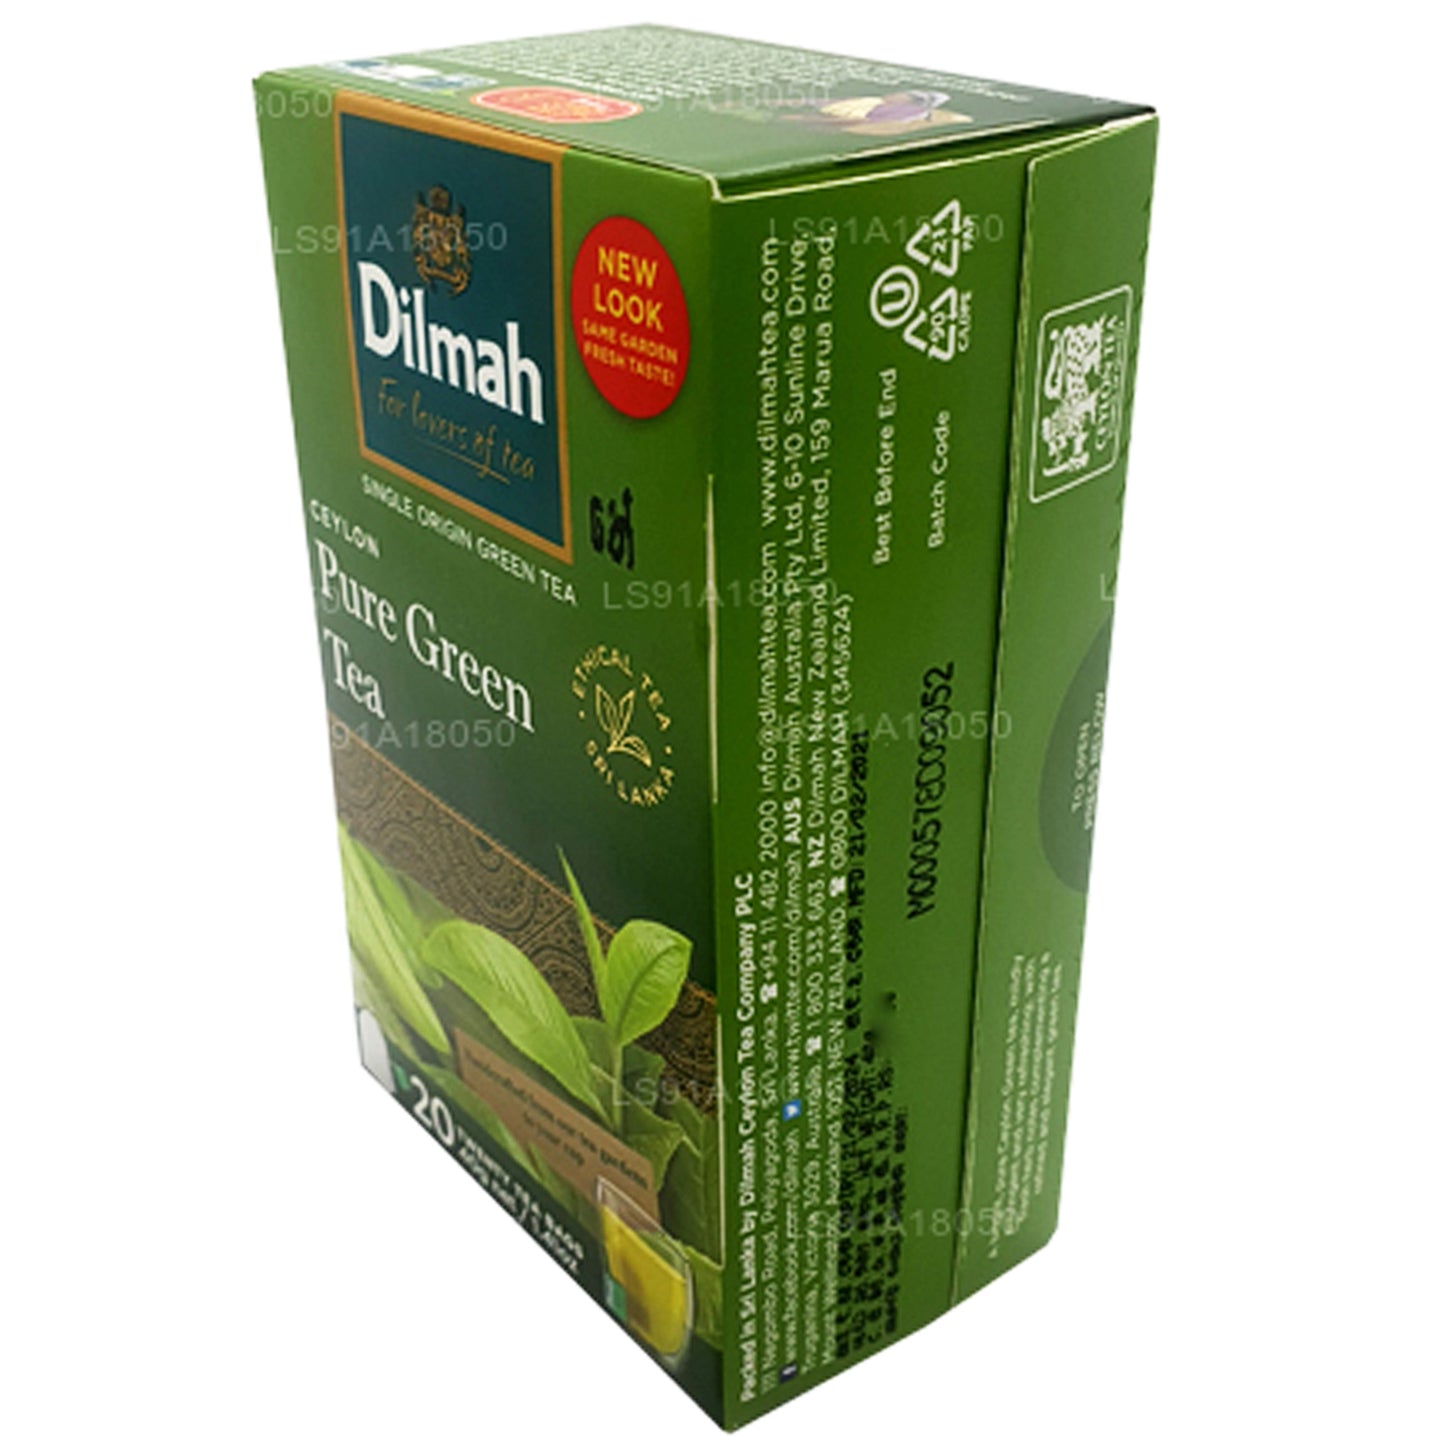 Dilmah Pure Ceylon groene thee (40 g) 20 theezakjes